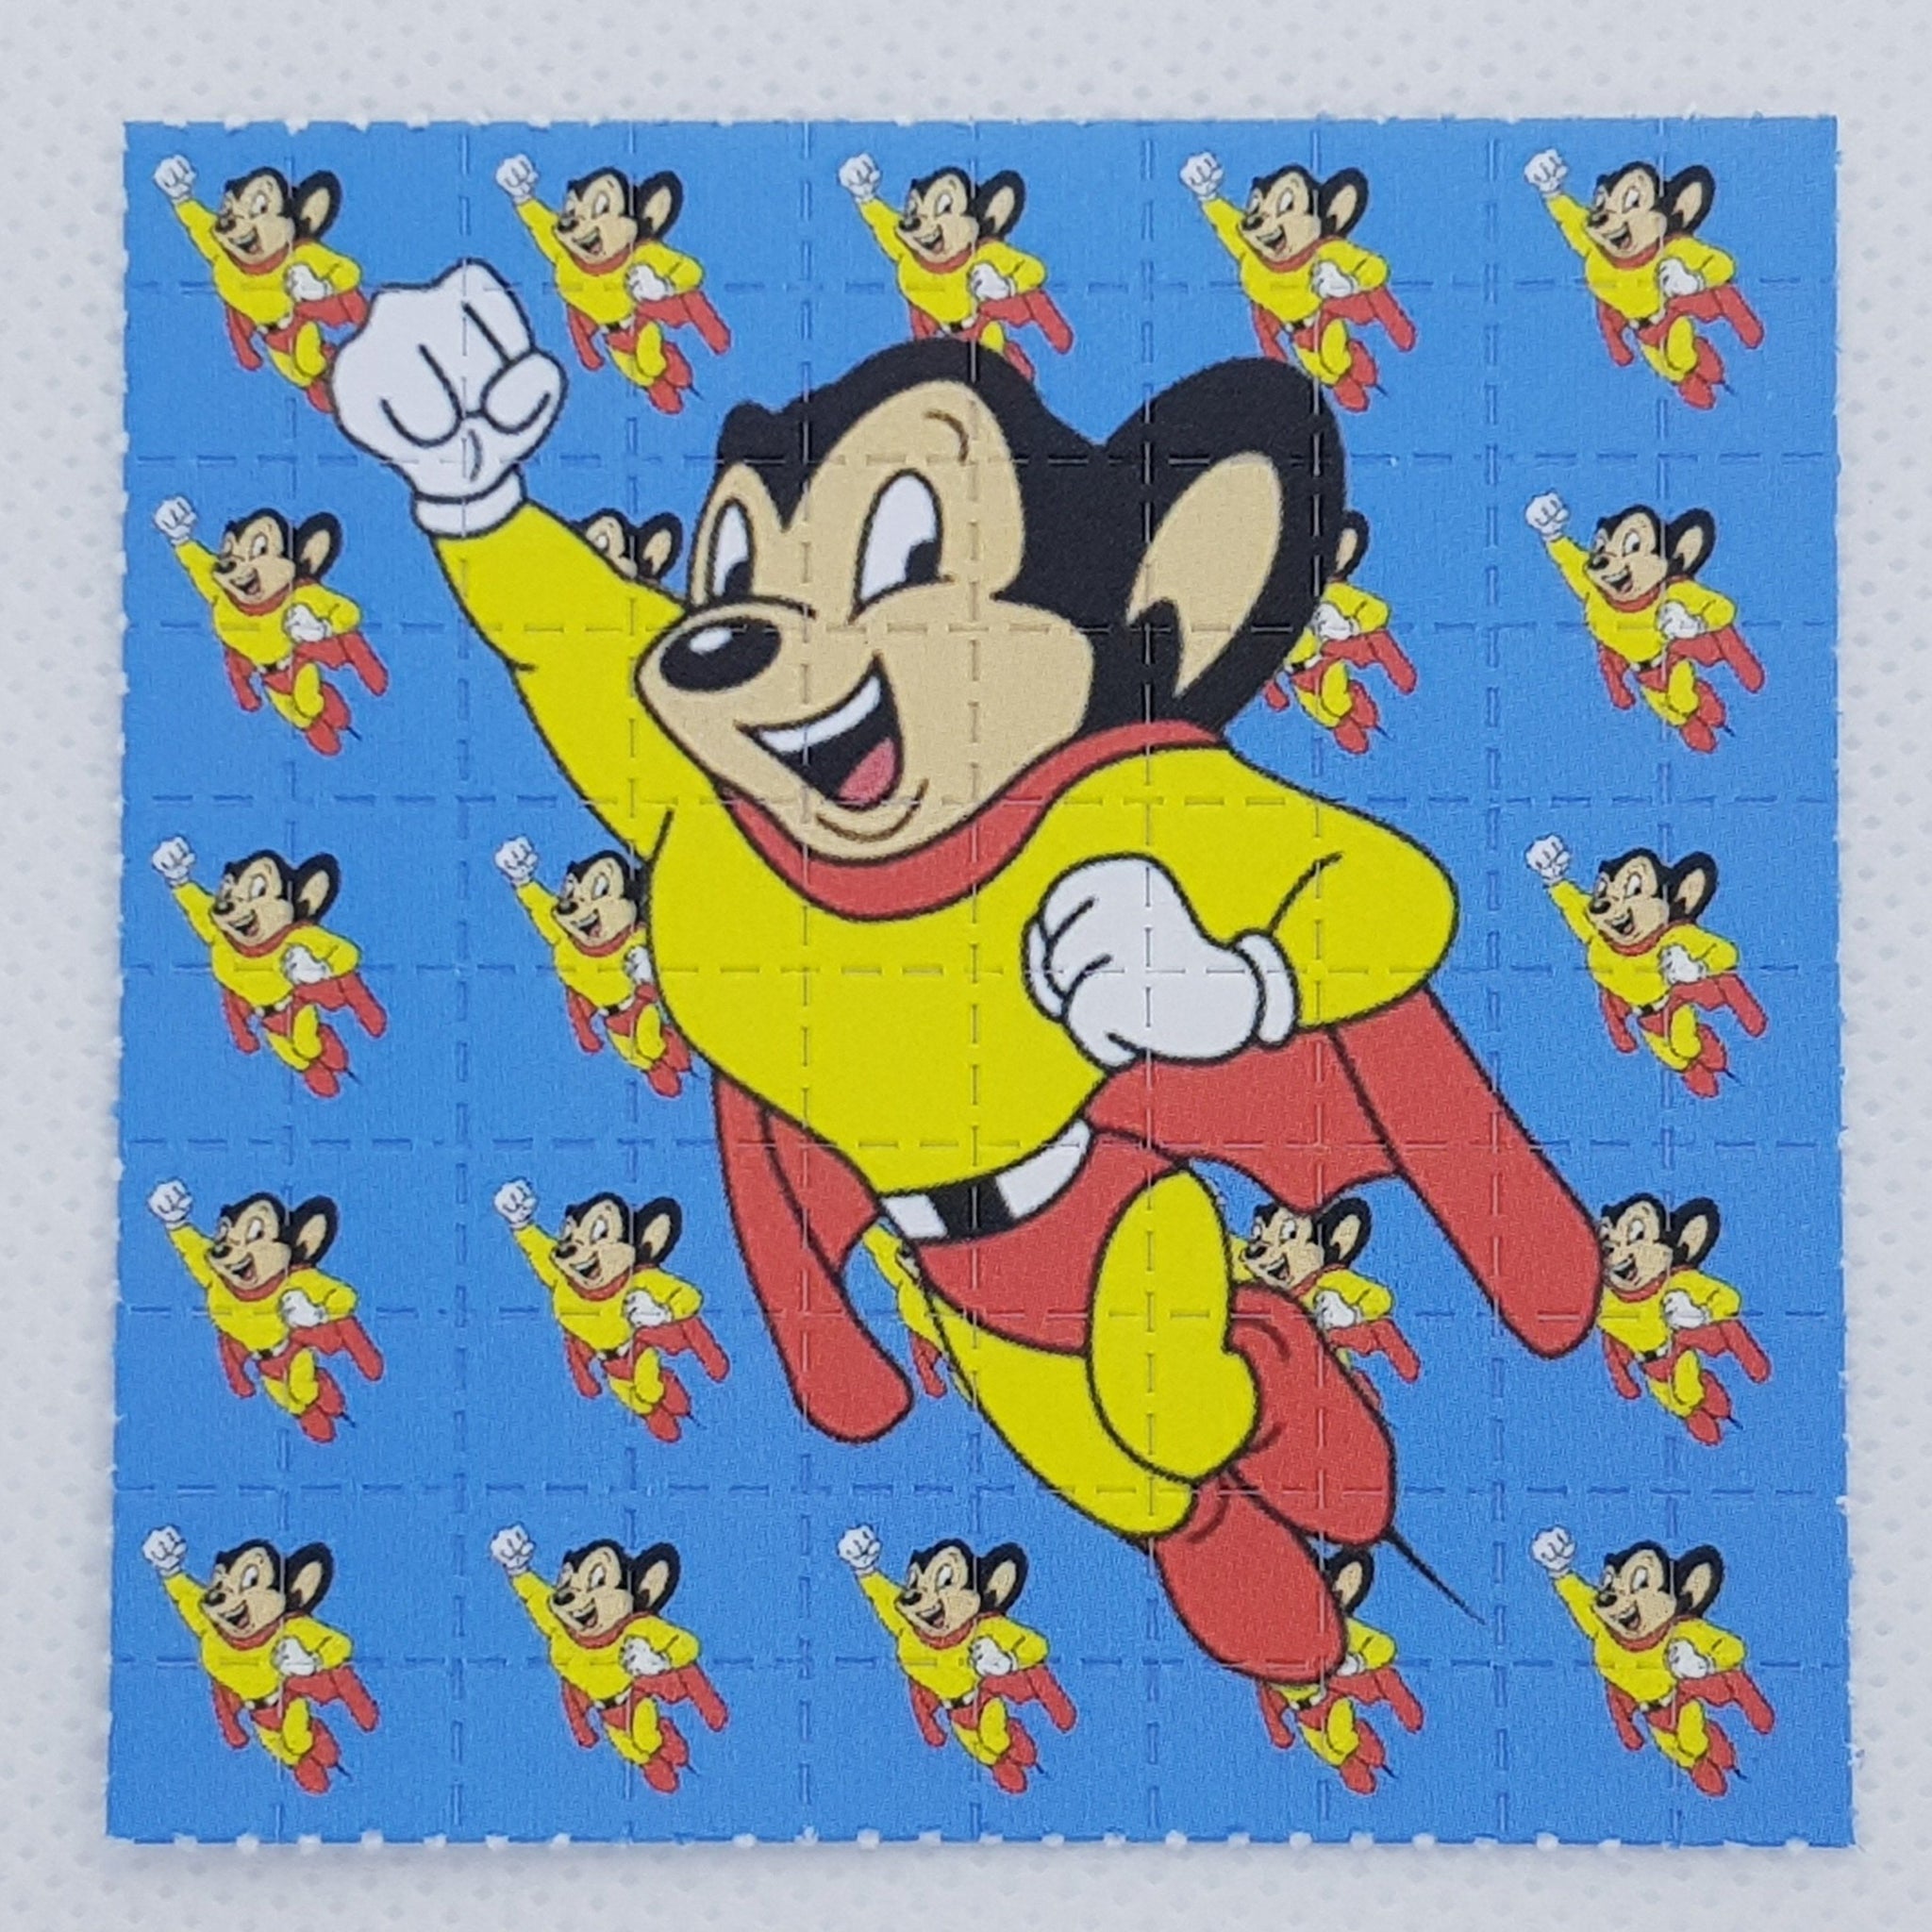 Mighty Mouse LSD tab full sheet